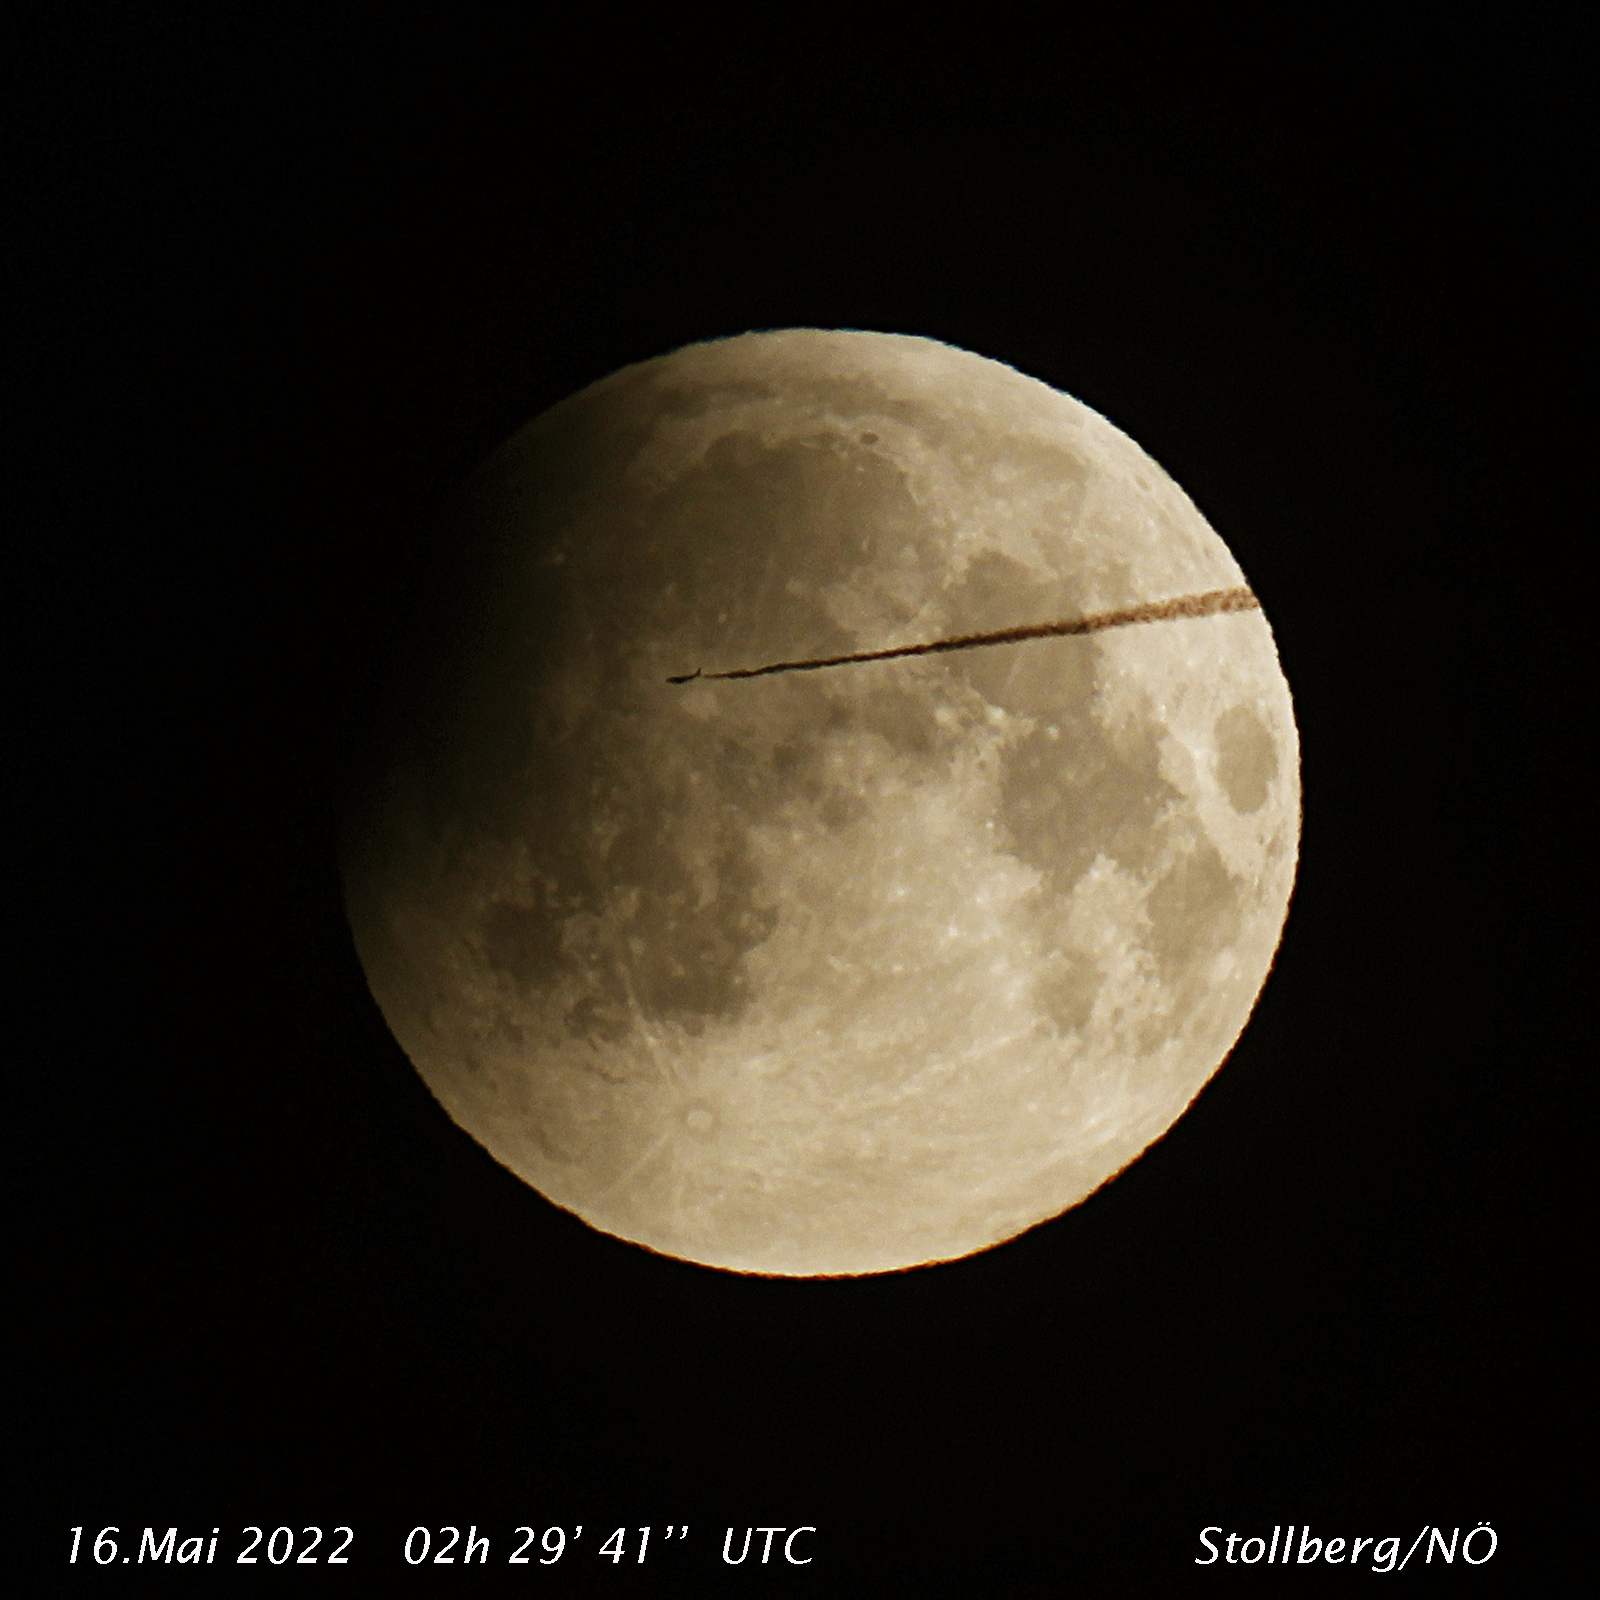 Flugzeug vor dem verfinsterten Mond am 16. Mai 2022 - Bild Manfred Nehonsky